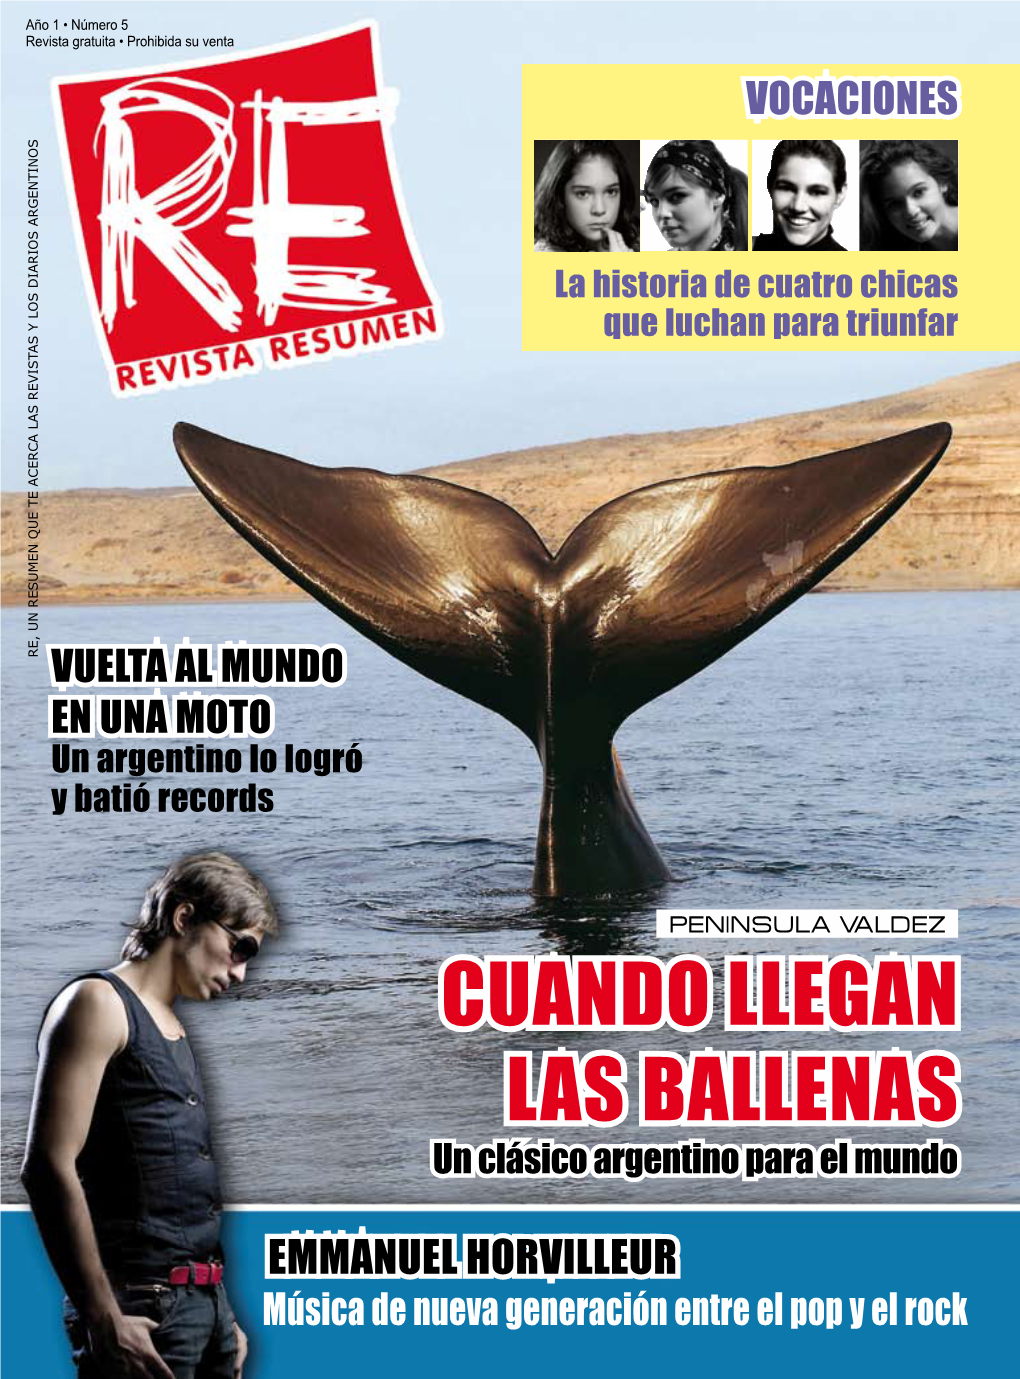 RE : Revista Resumen Año 1 No. 5 Ago 2008